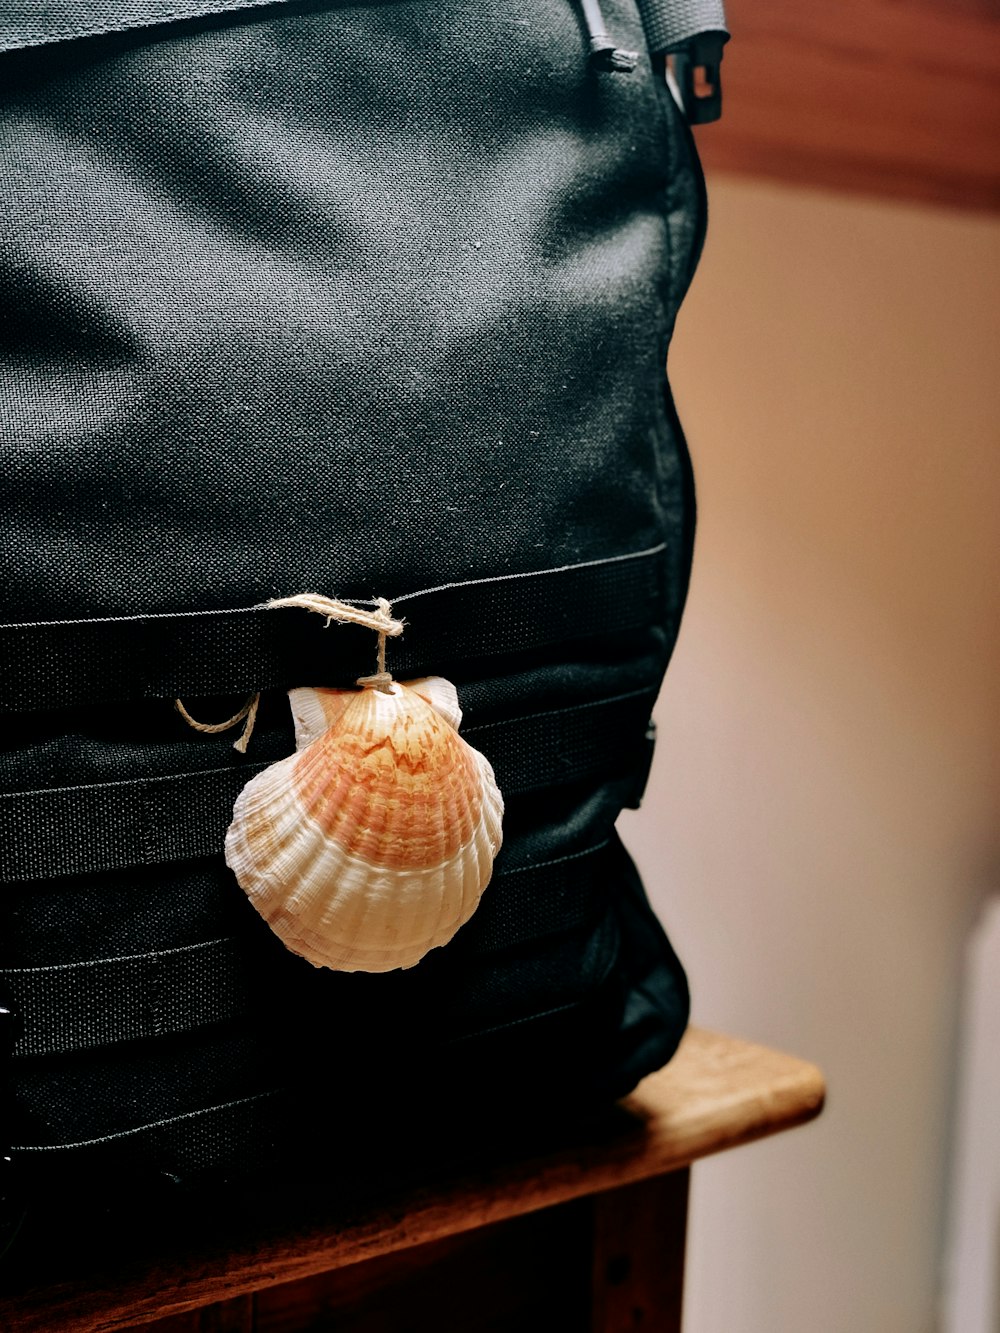 Una concha está sentada encima de una bolsa negra